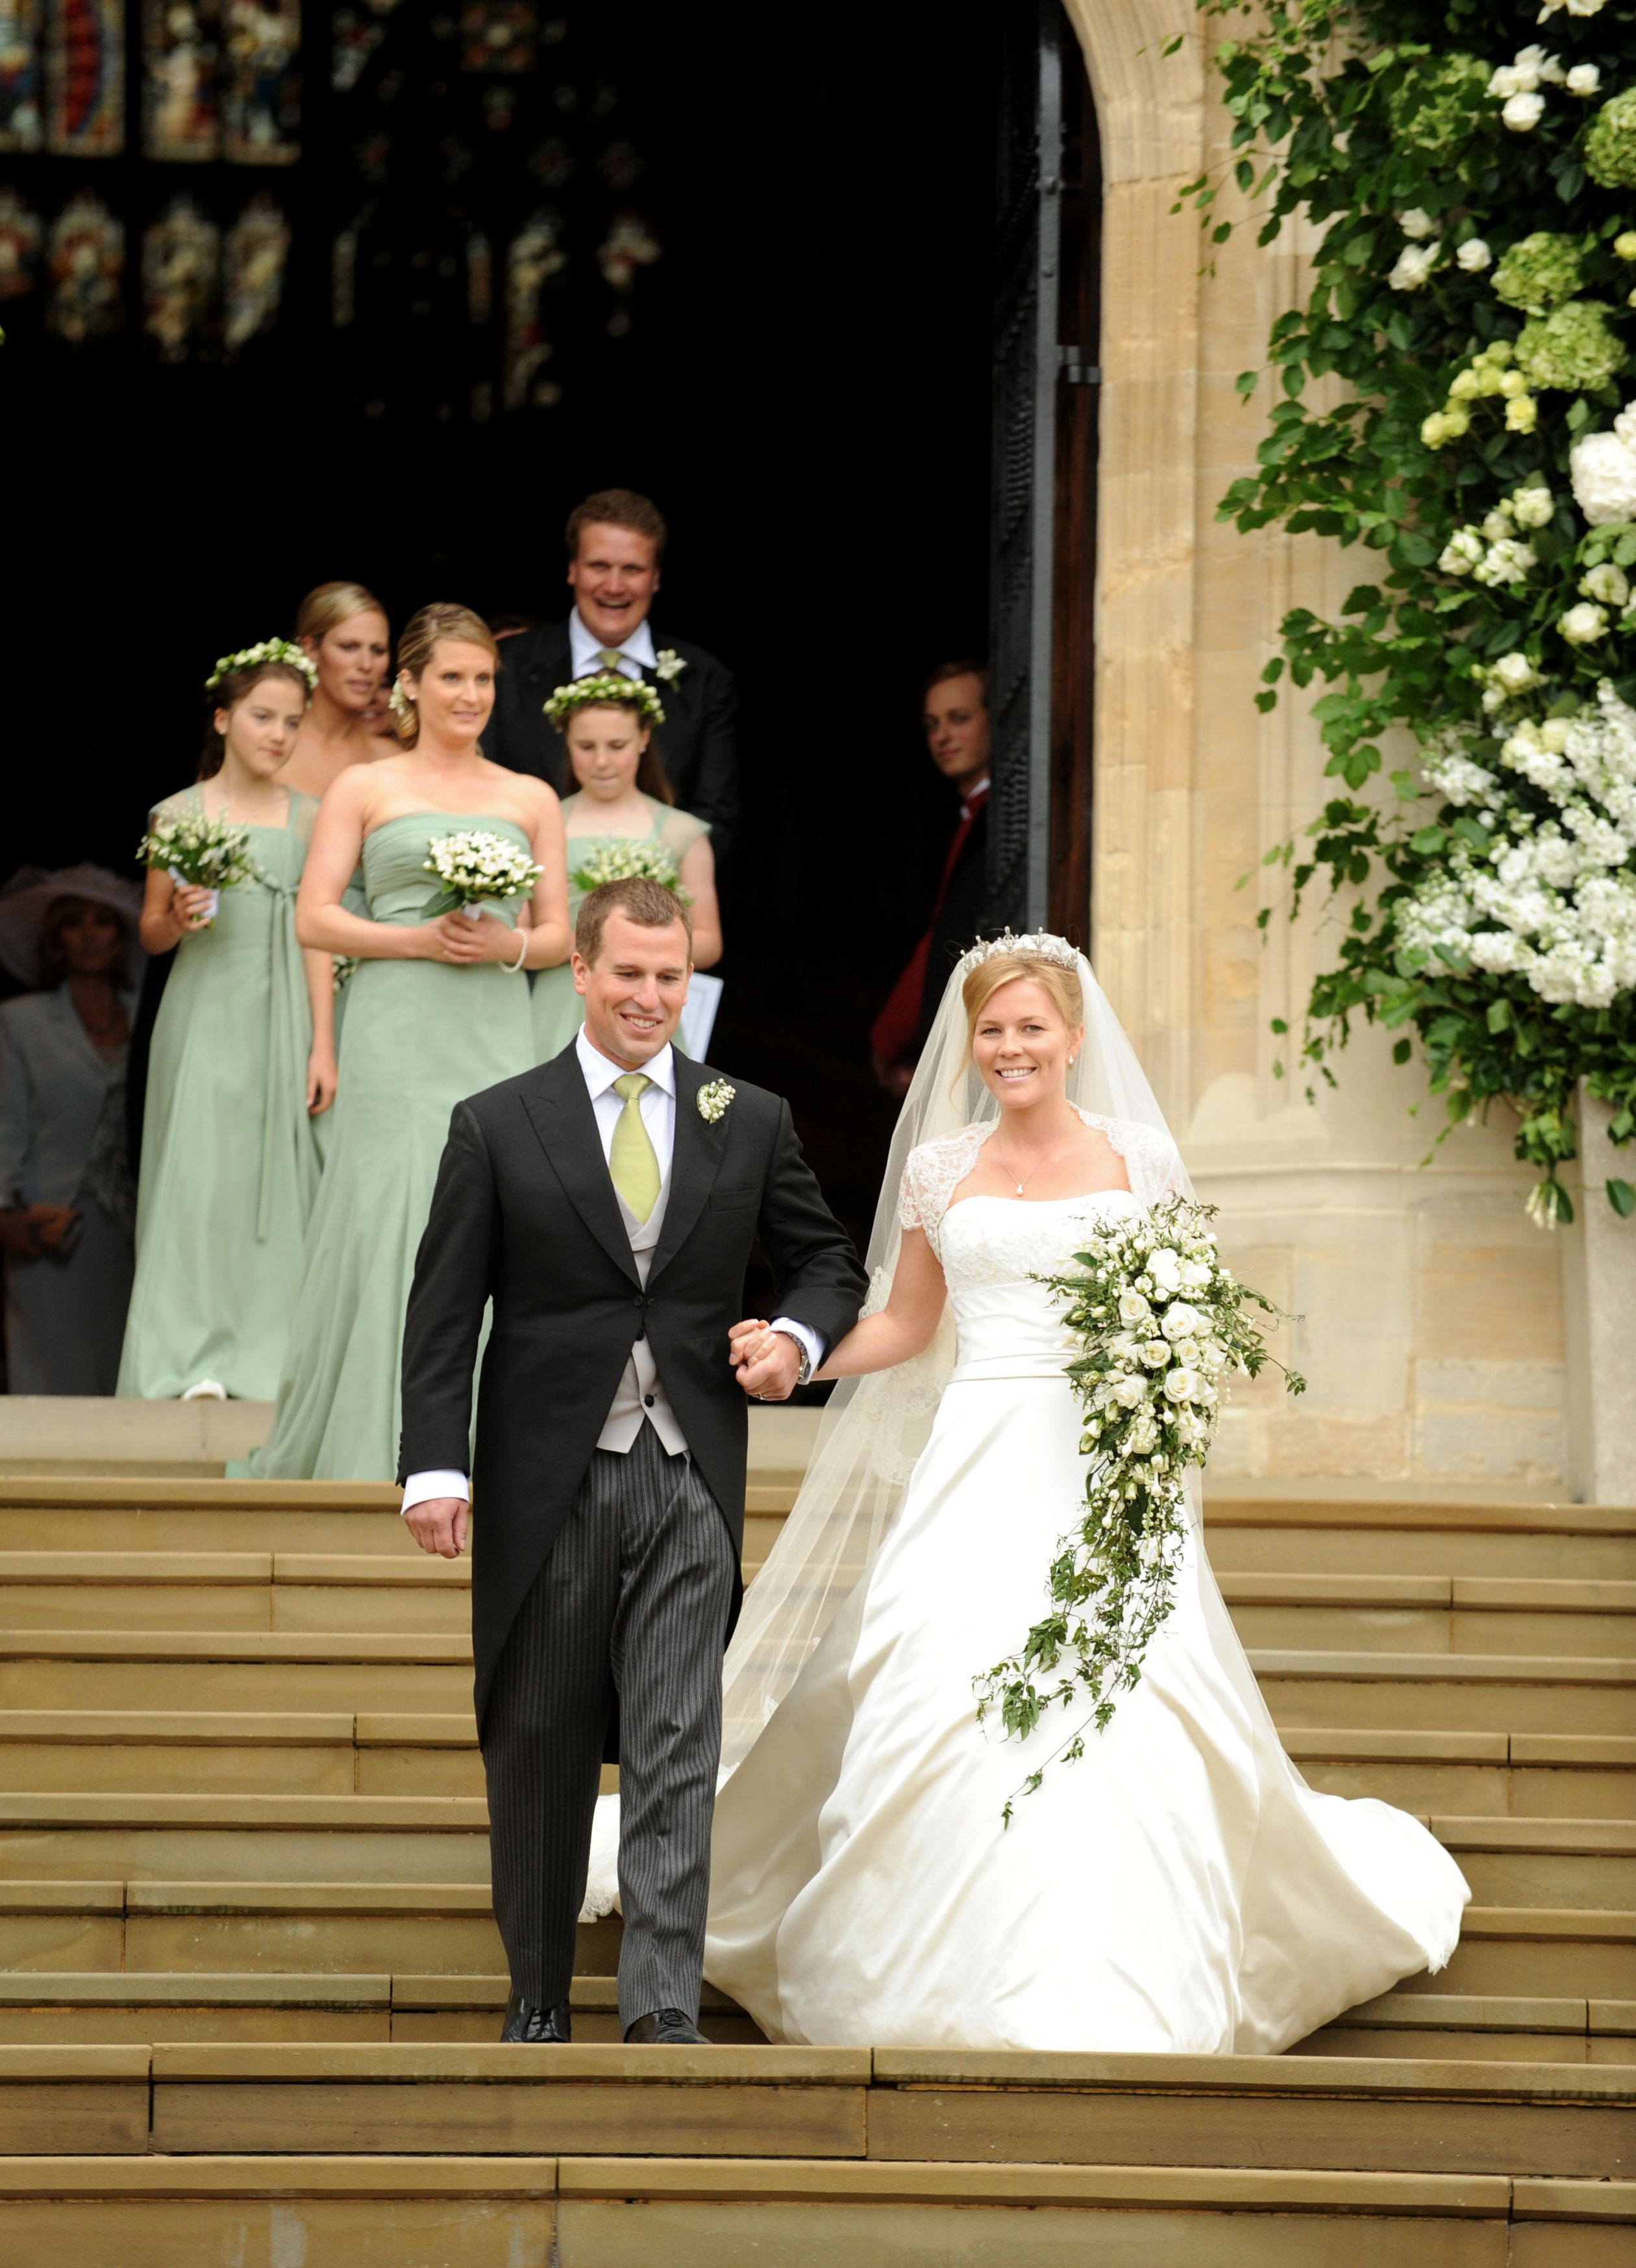 De bruiloft van Peter en Autumn in Windsor in 2008